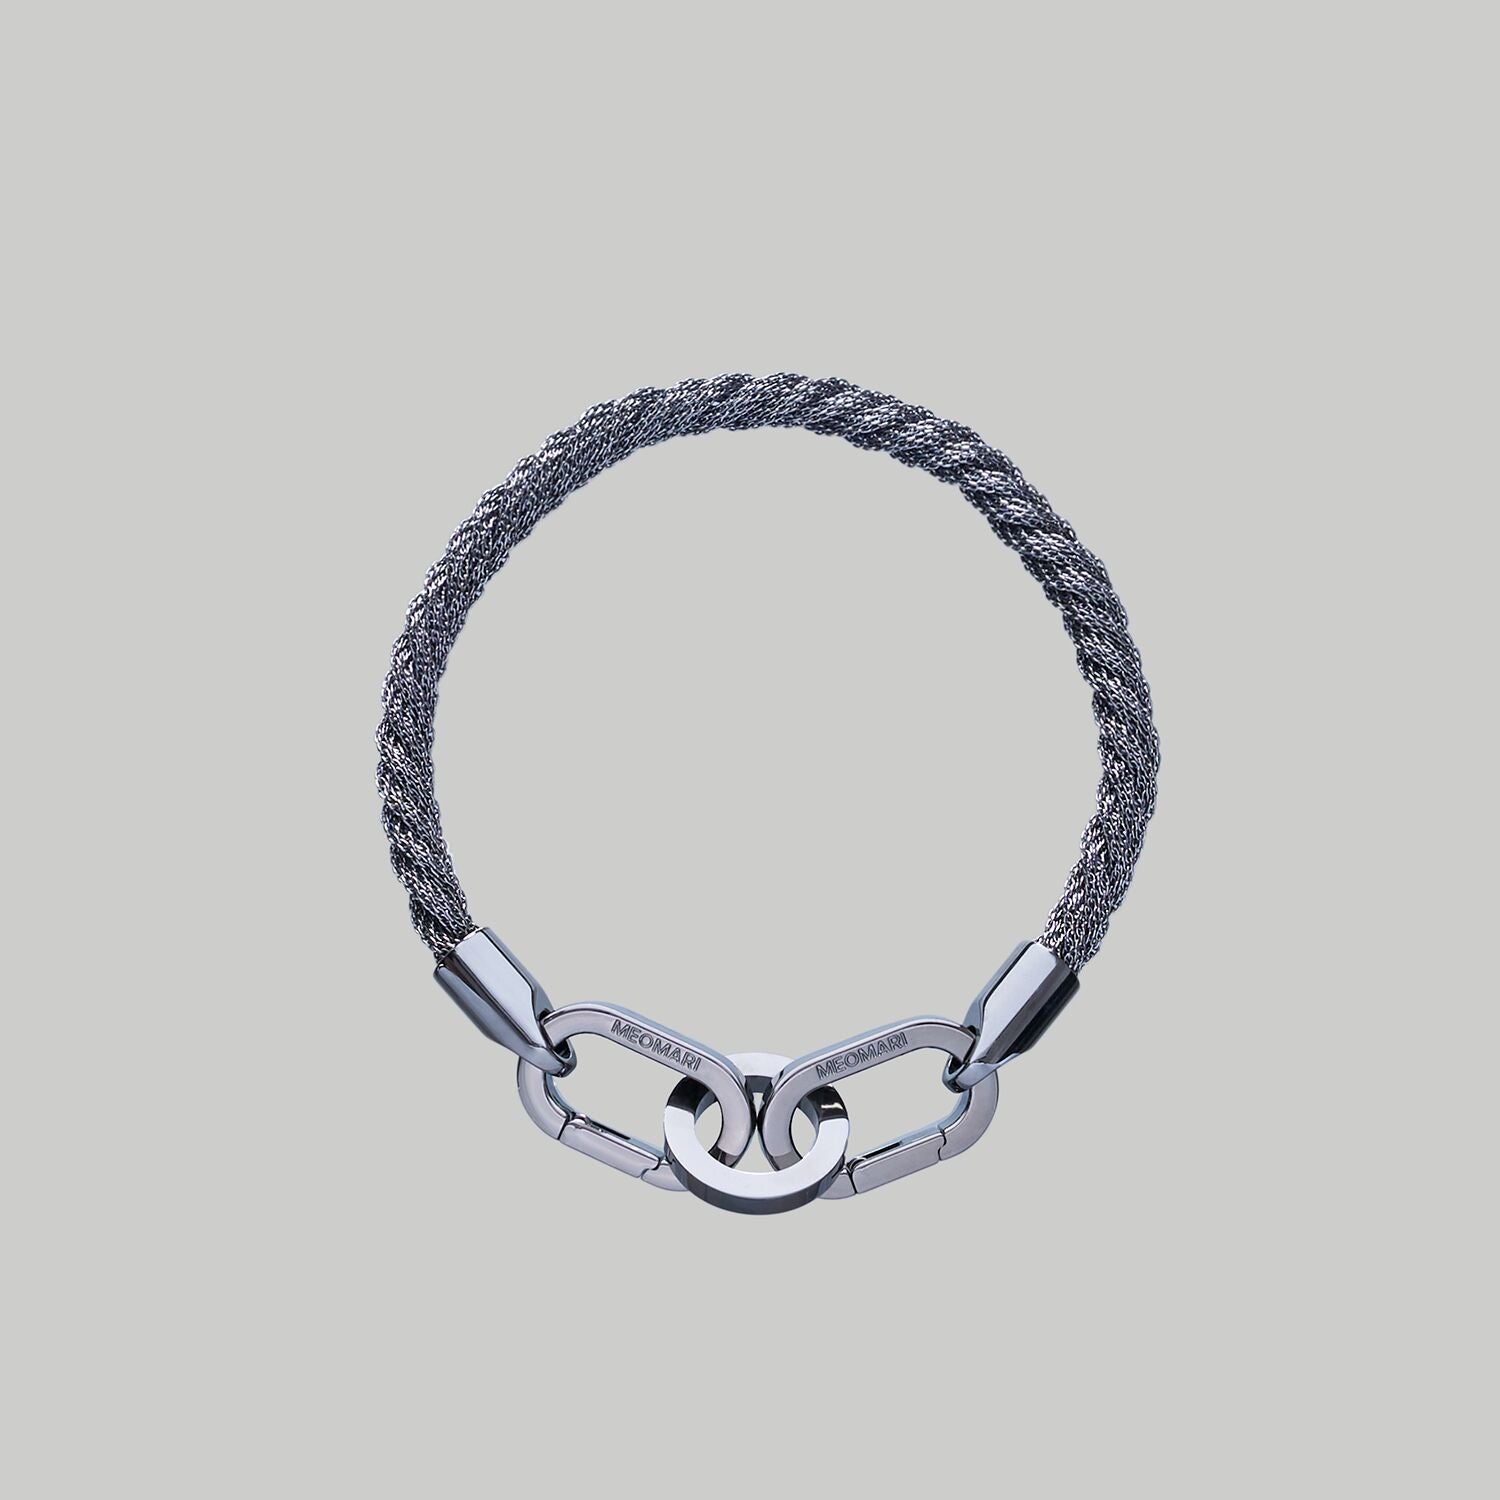 Luxury dog collar in Ruthenium braided